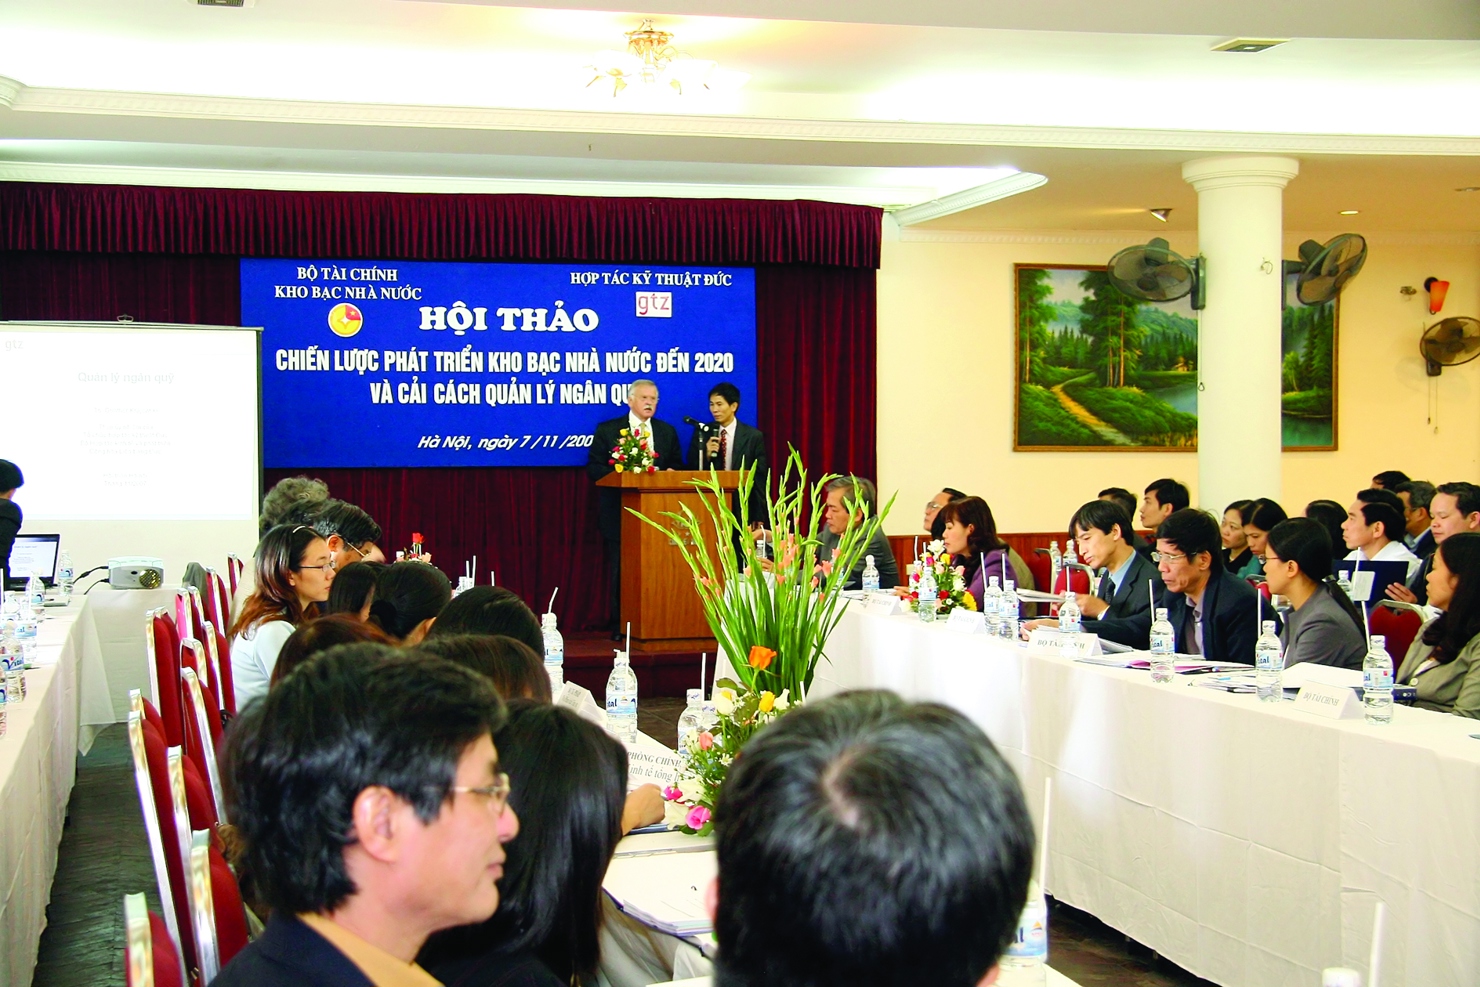 Hội thảo Chiến lược phát triển Kho bạc Nhà nước đến năm 2020 và cải cách quản lý ngân quỹ do Kho bạc Nhà nước Việt Nam và Tổ chức Hợp tác Kỹ thuật Đức phối hợp tổ chức 